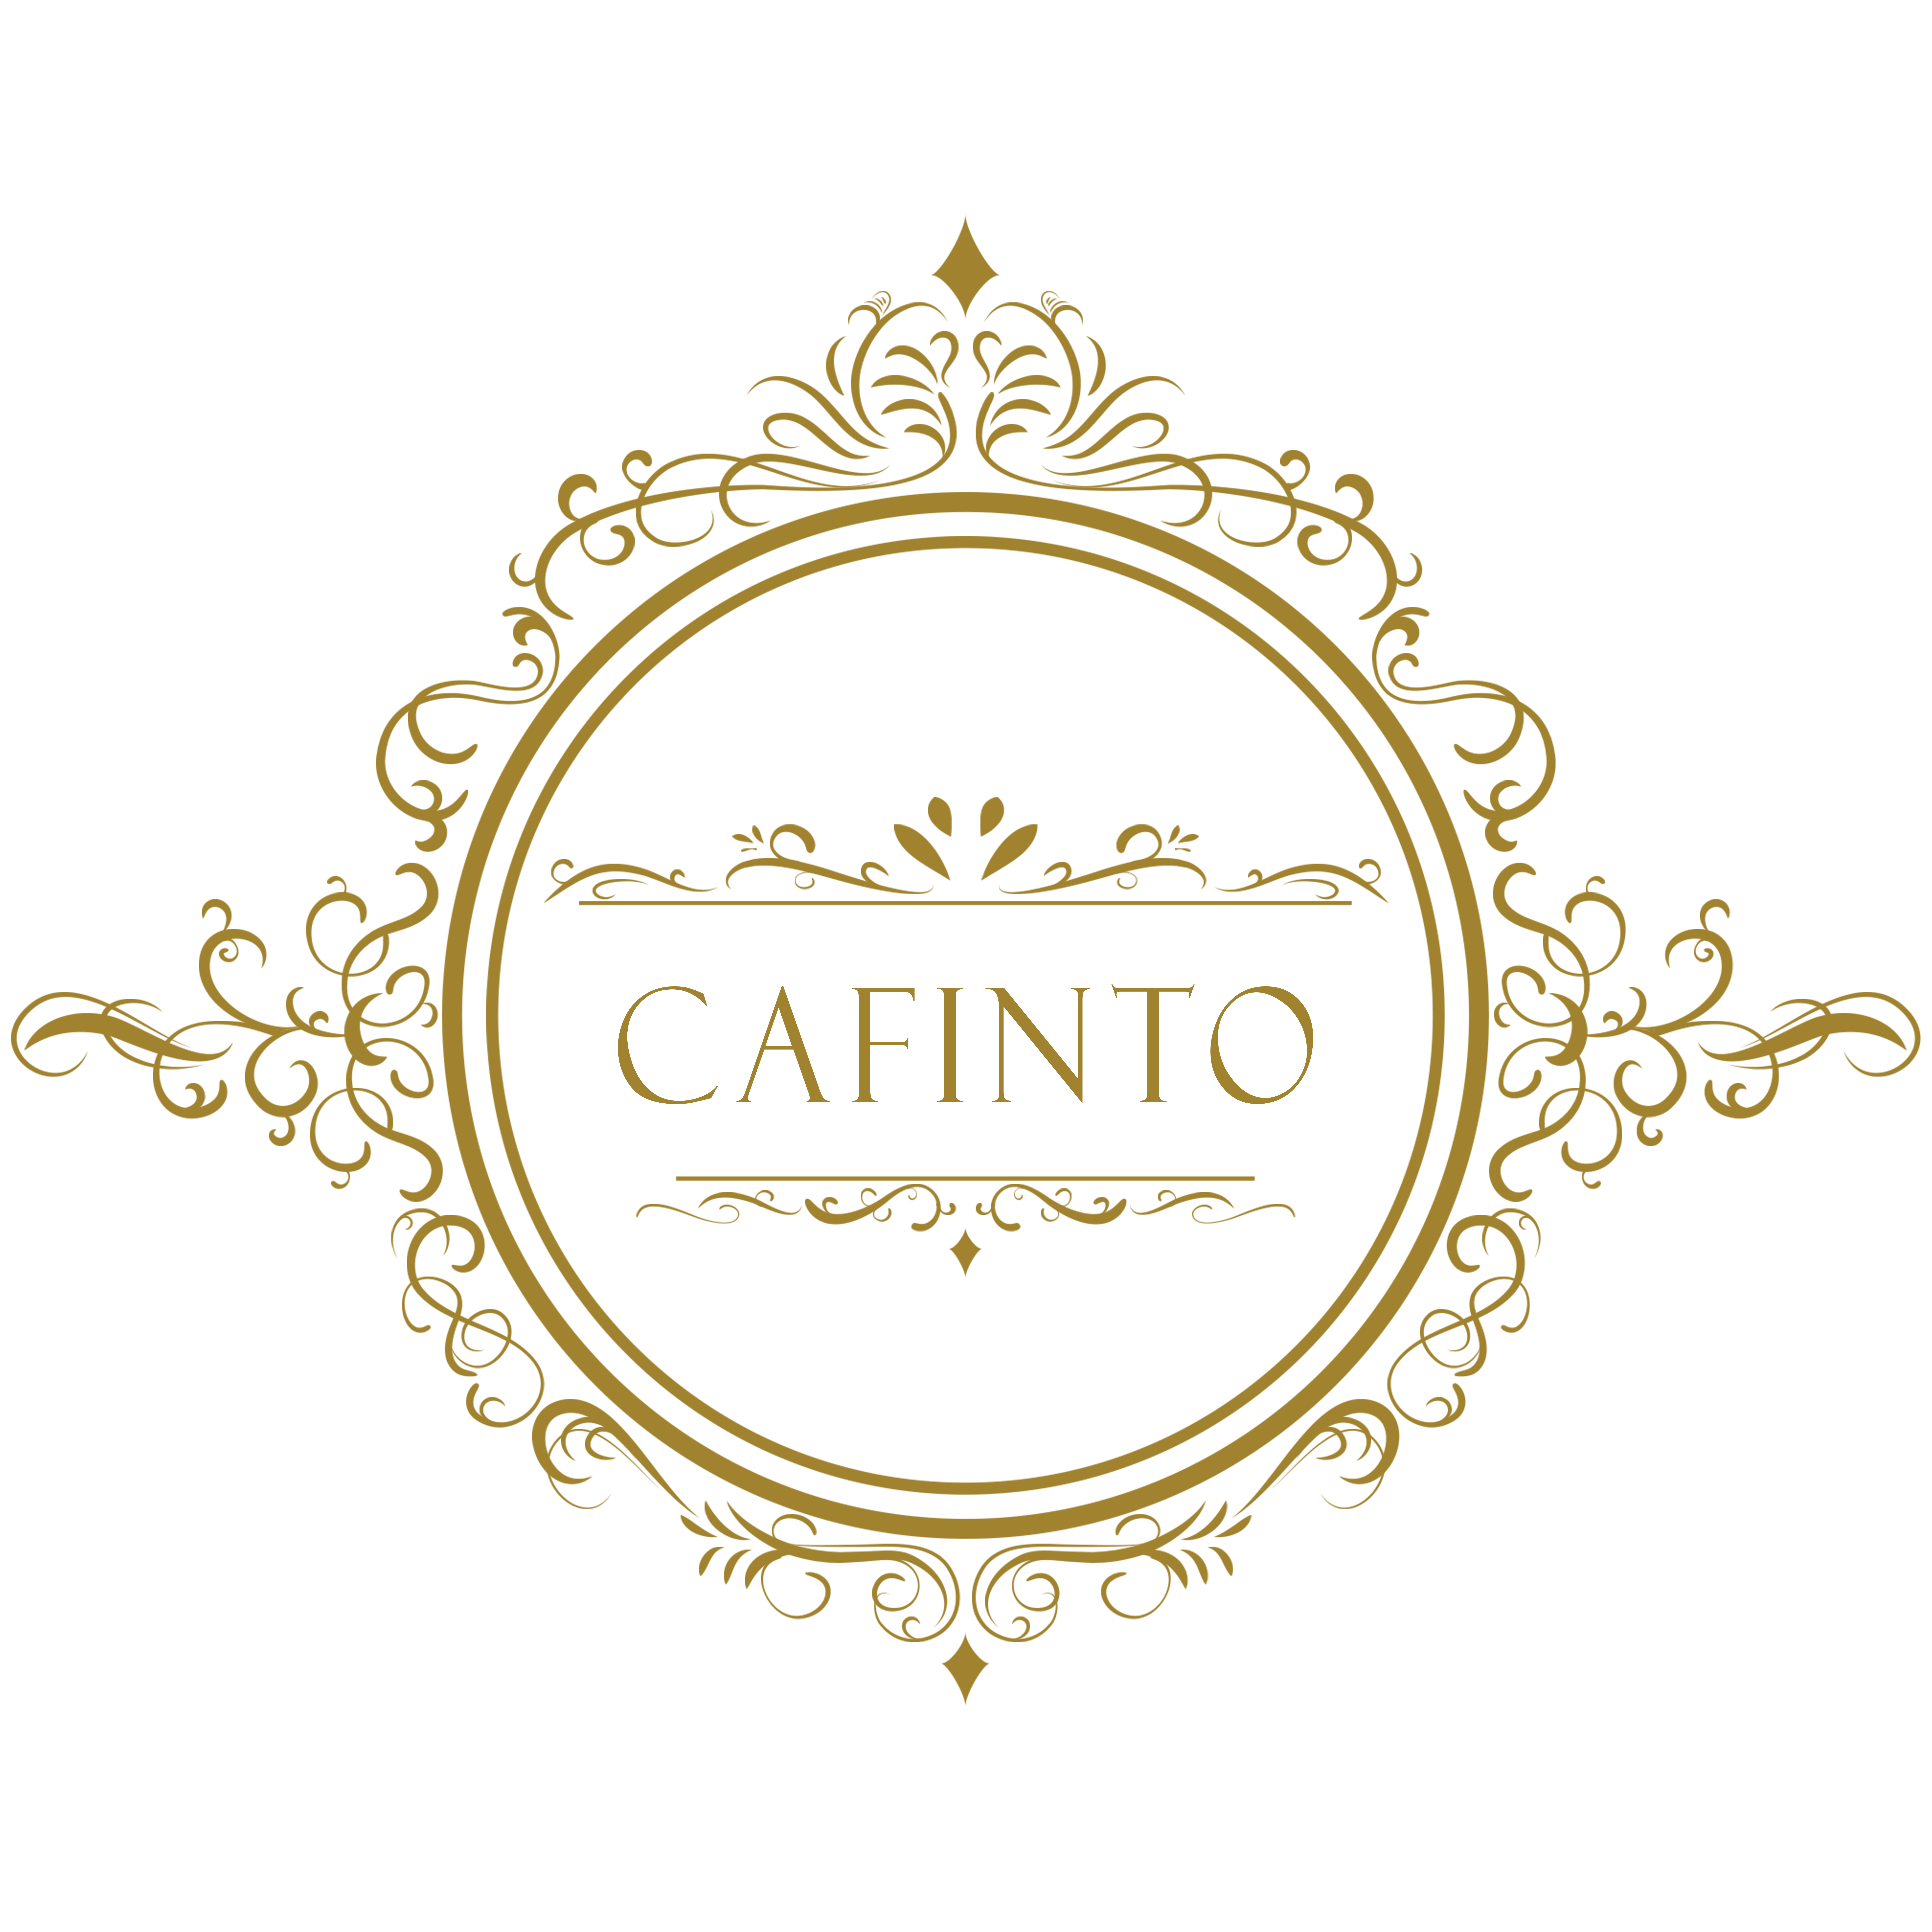 Cafinto